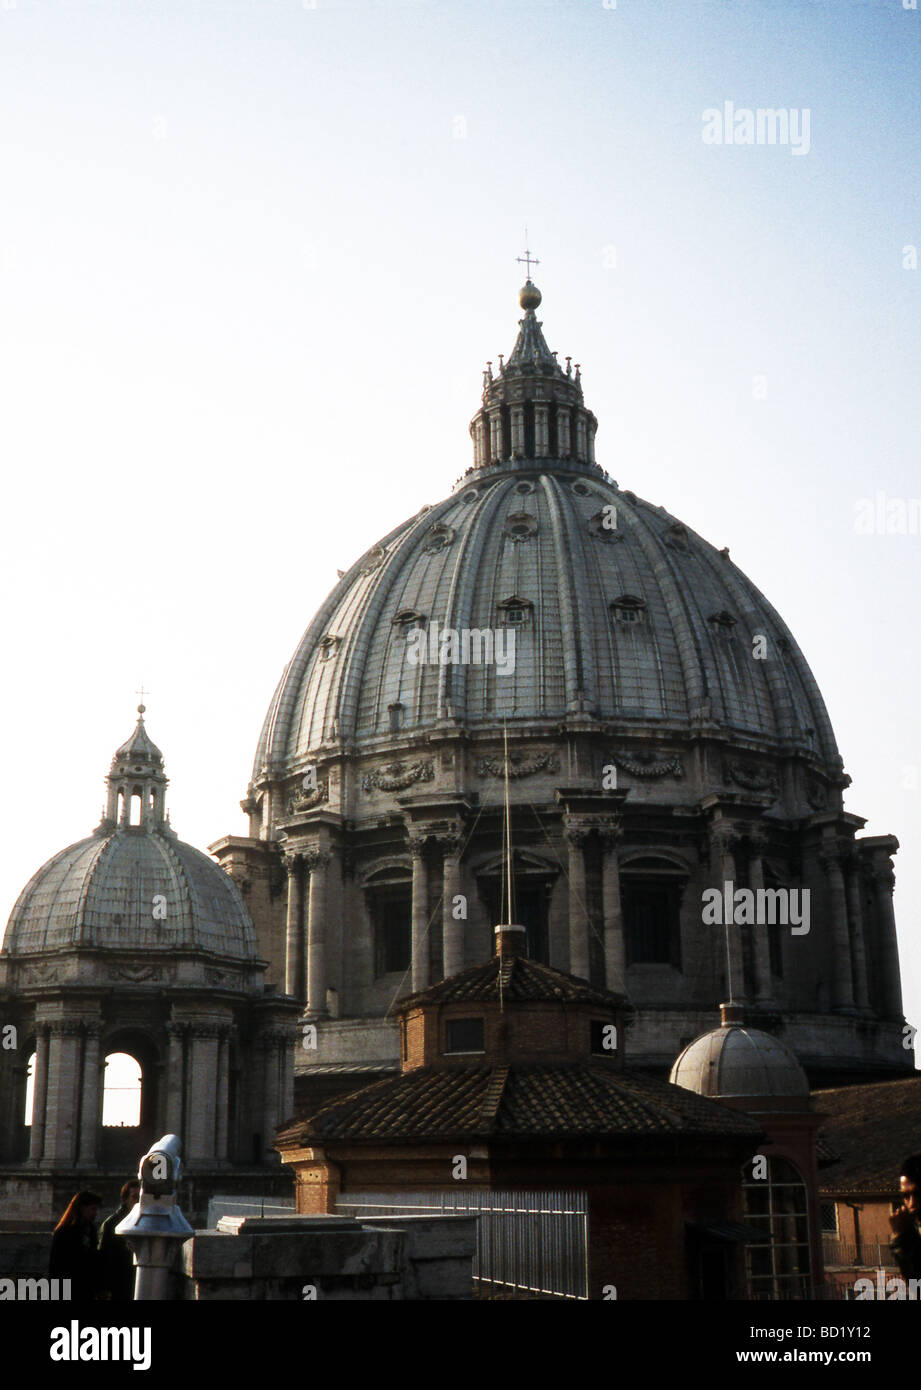 Die Kuppel der Basilika St. Peter im Vatikan ist die größte Kuppel der Welt.  Foto vom Dach der Basilika. Stockfoto